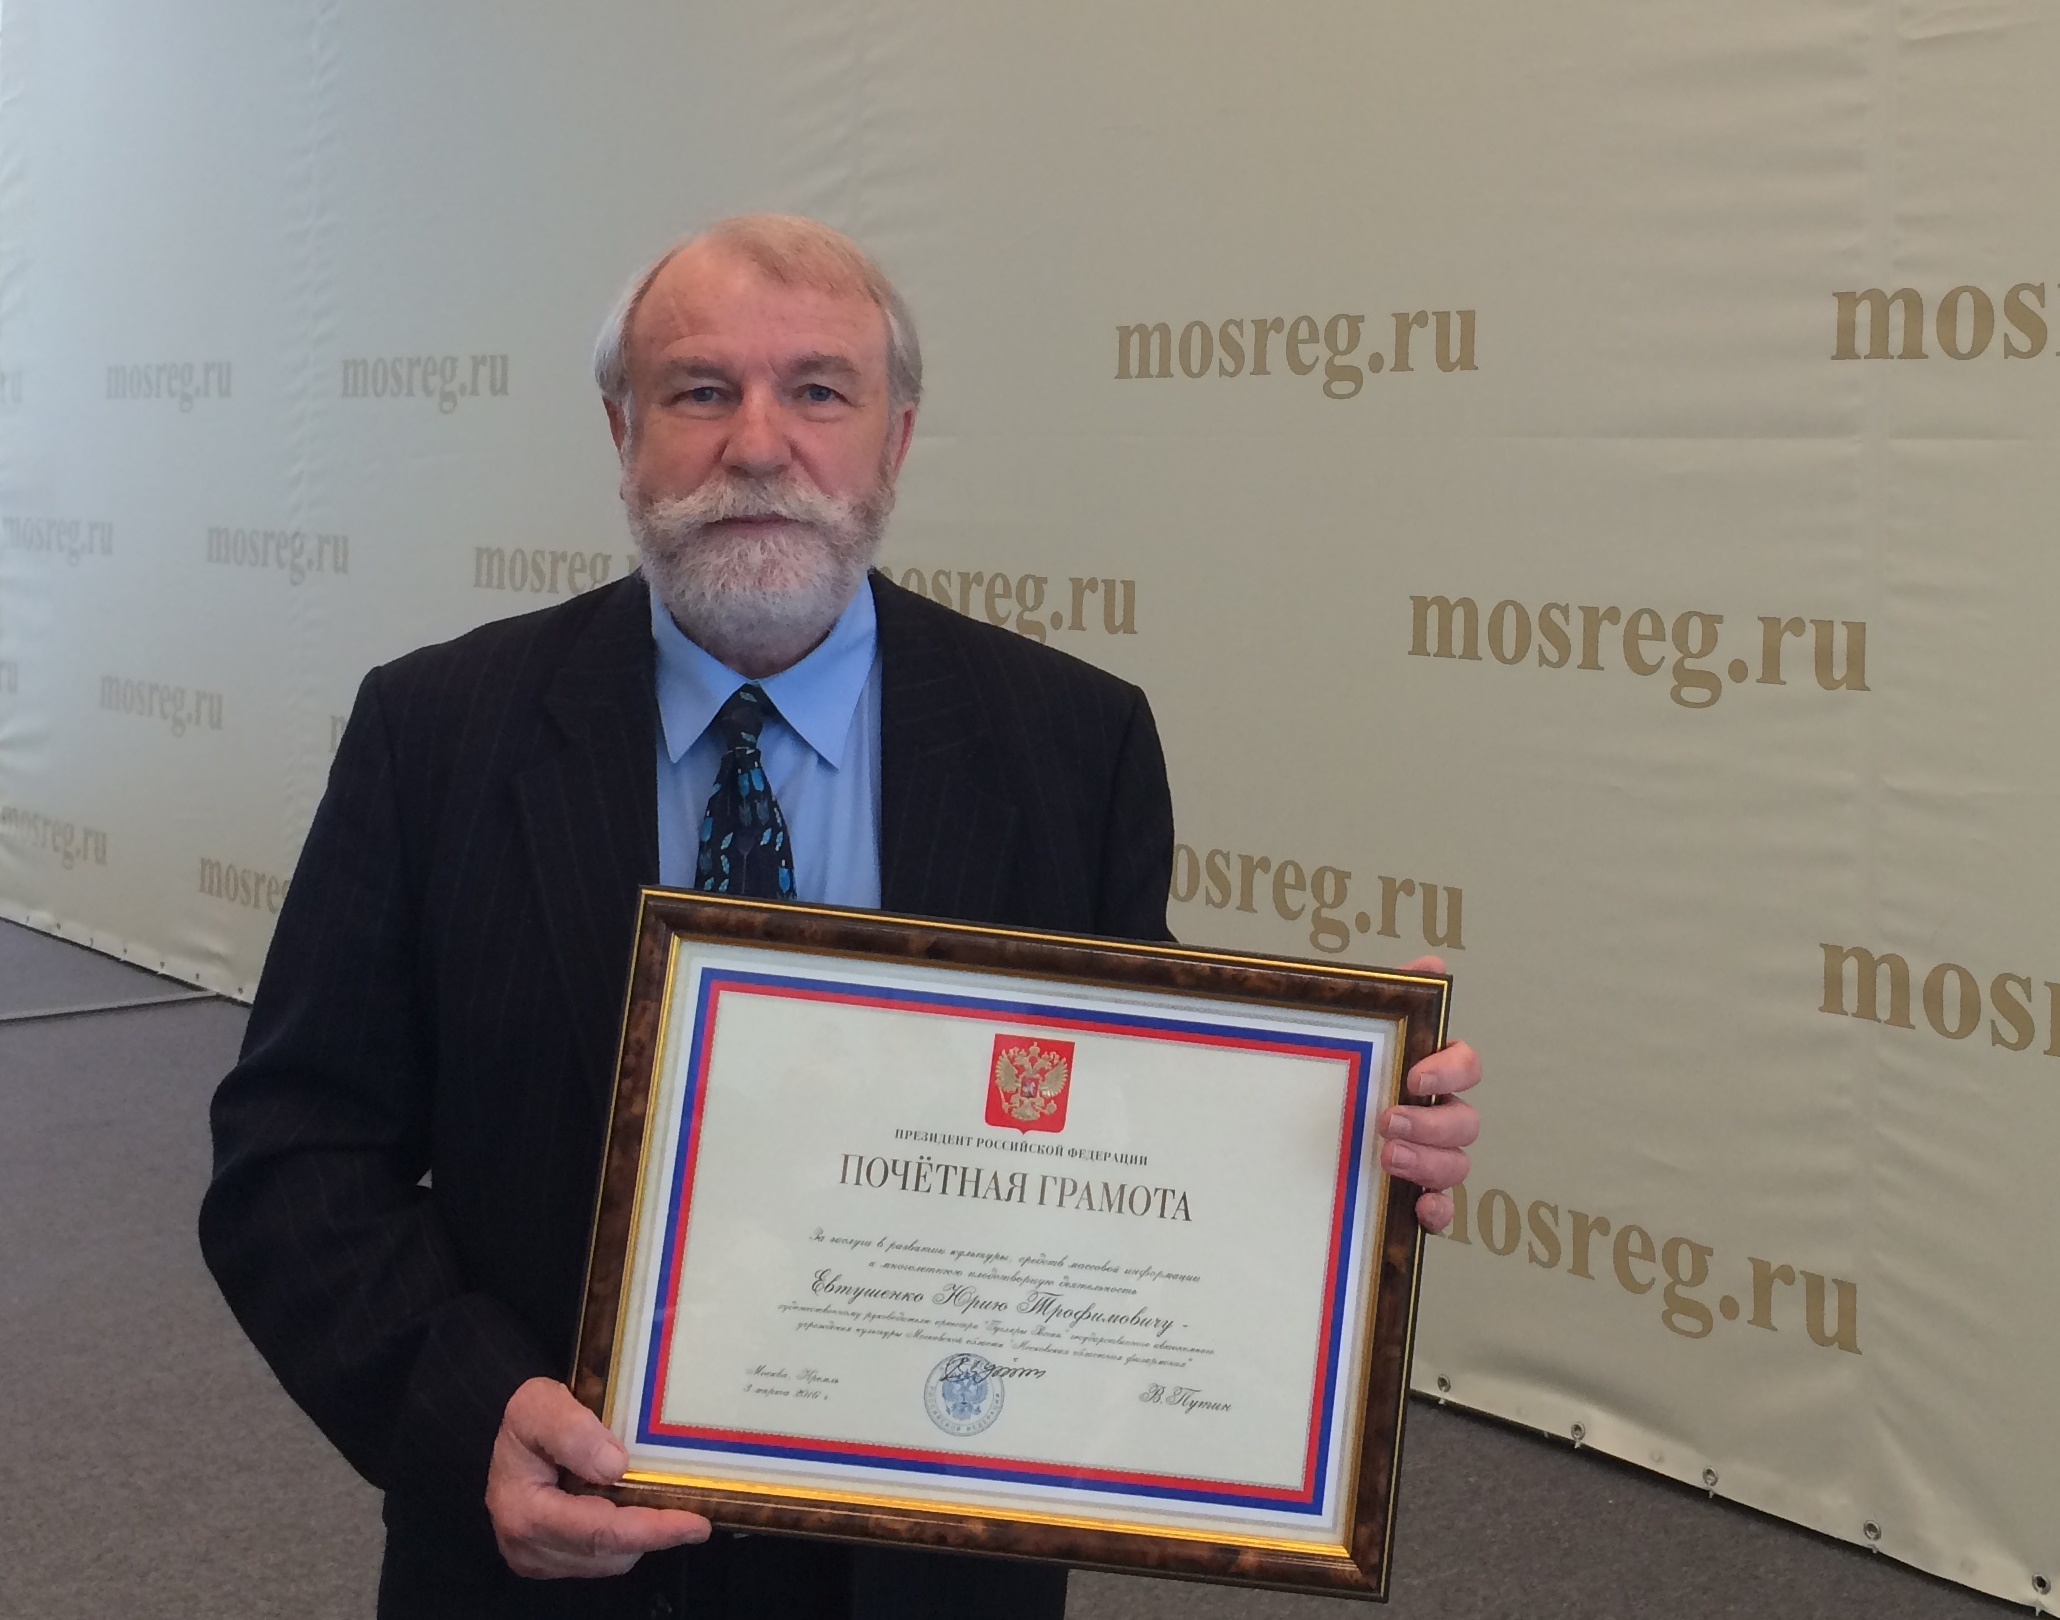 Yuri Yevtushenko receives honors from President of Russia